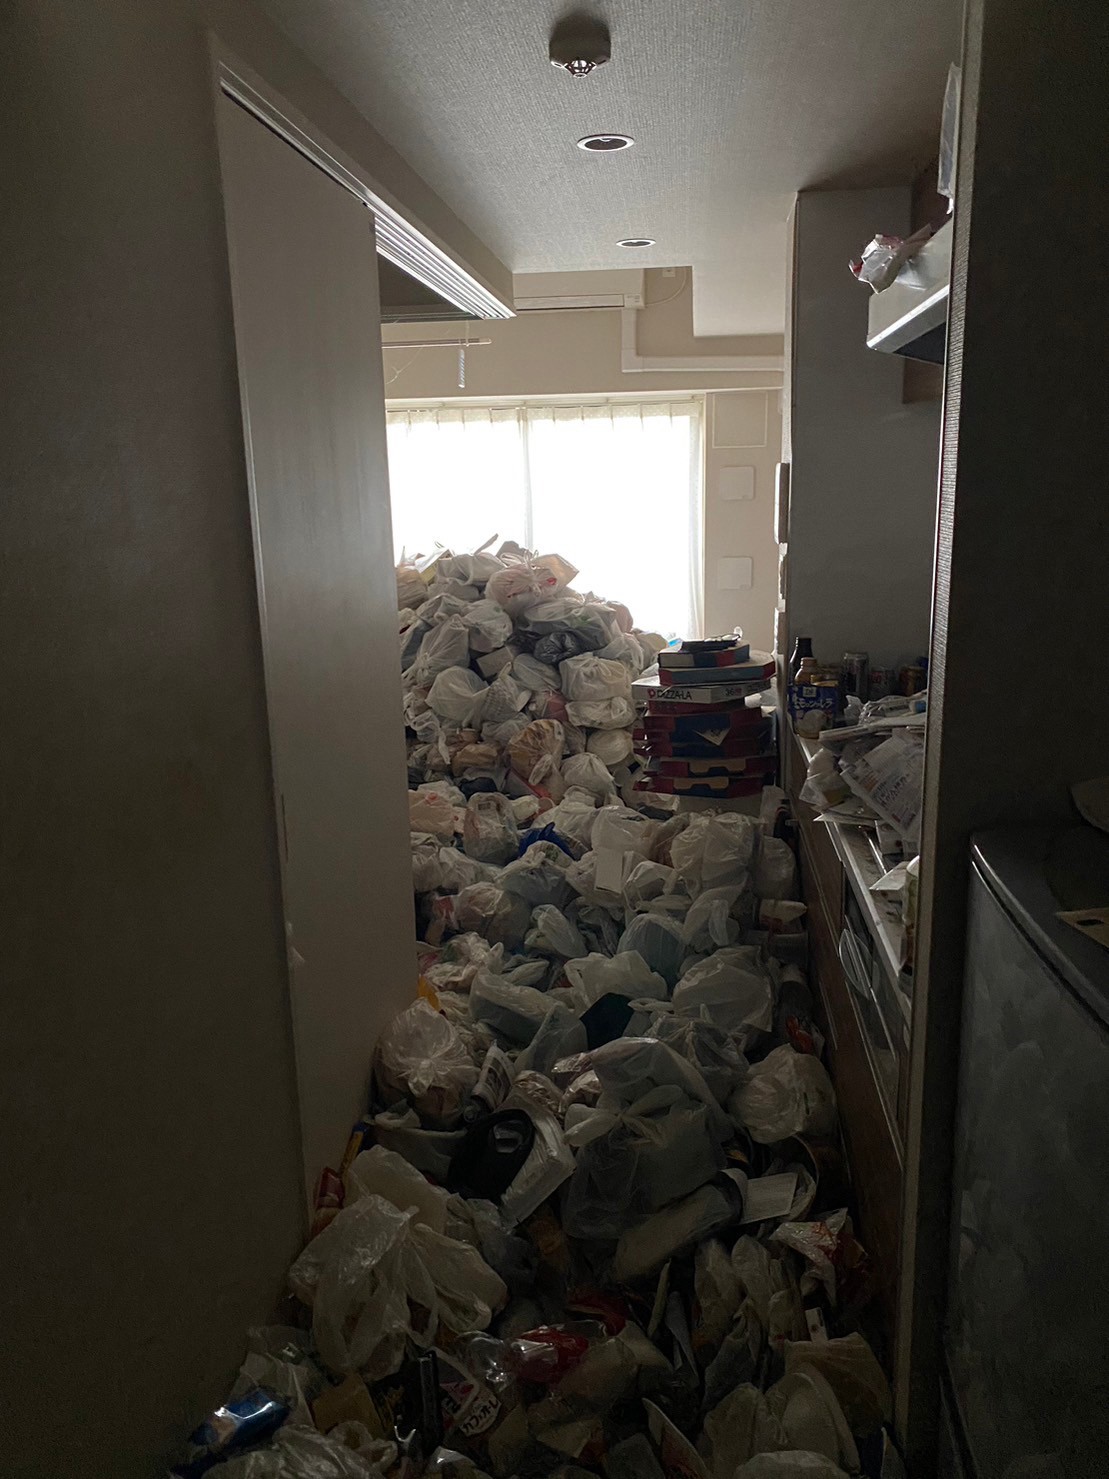 食品含む家庭ゴミ3部屋分、金属類、タンス、ソファーなどの回収前の状態